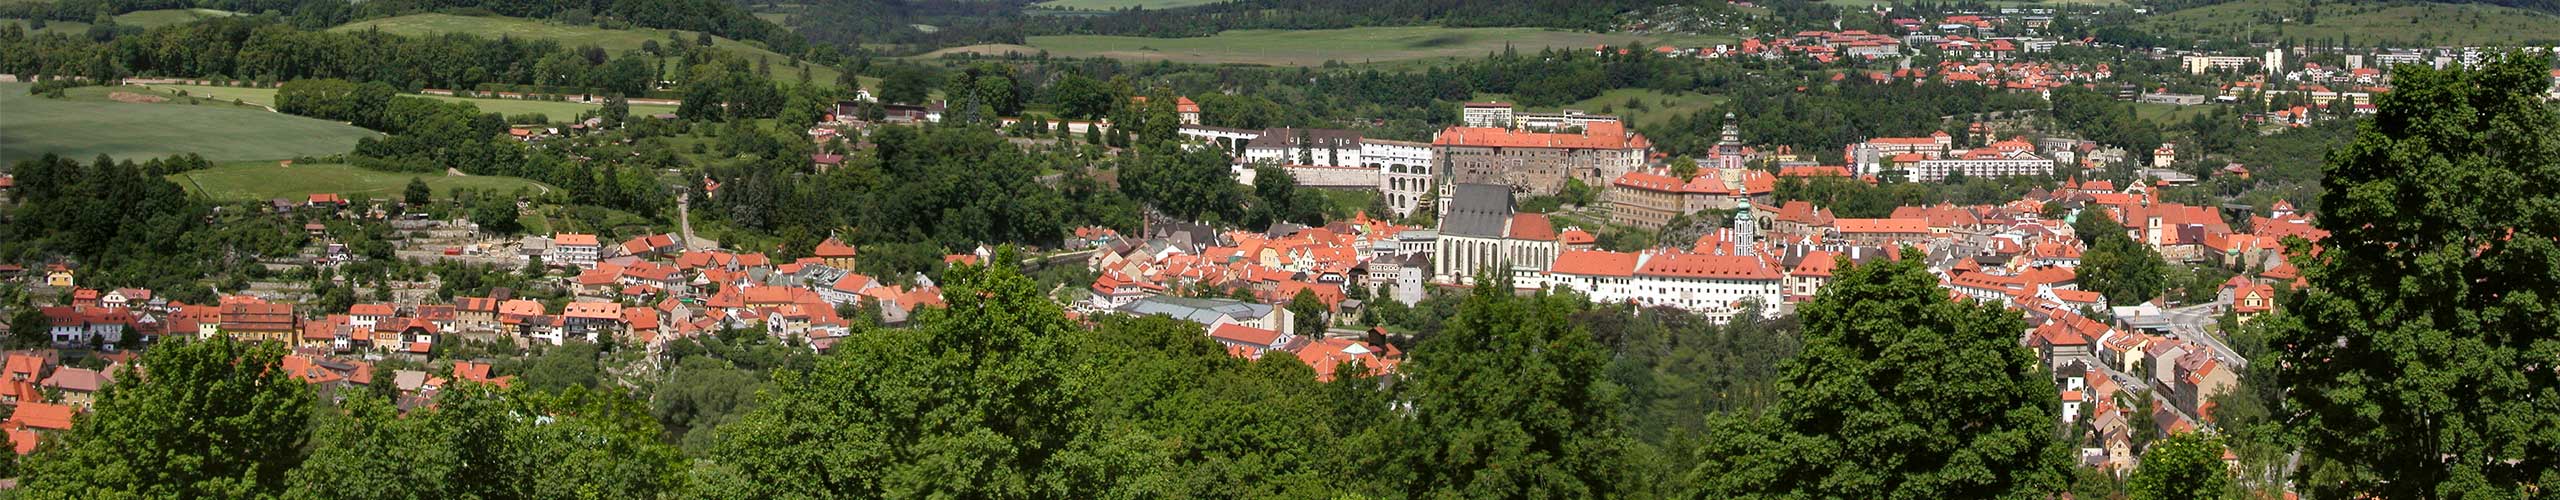 Český Krumlov, panorama